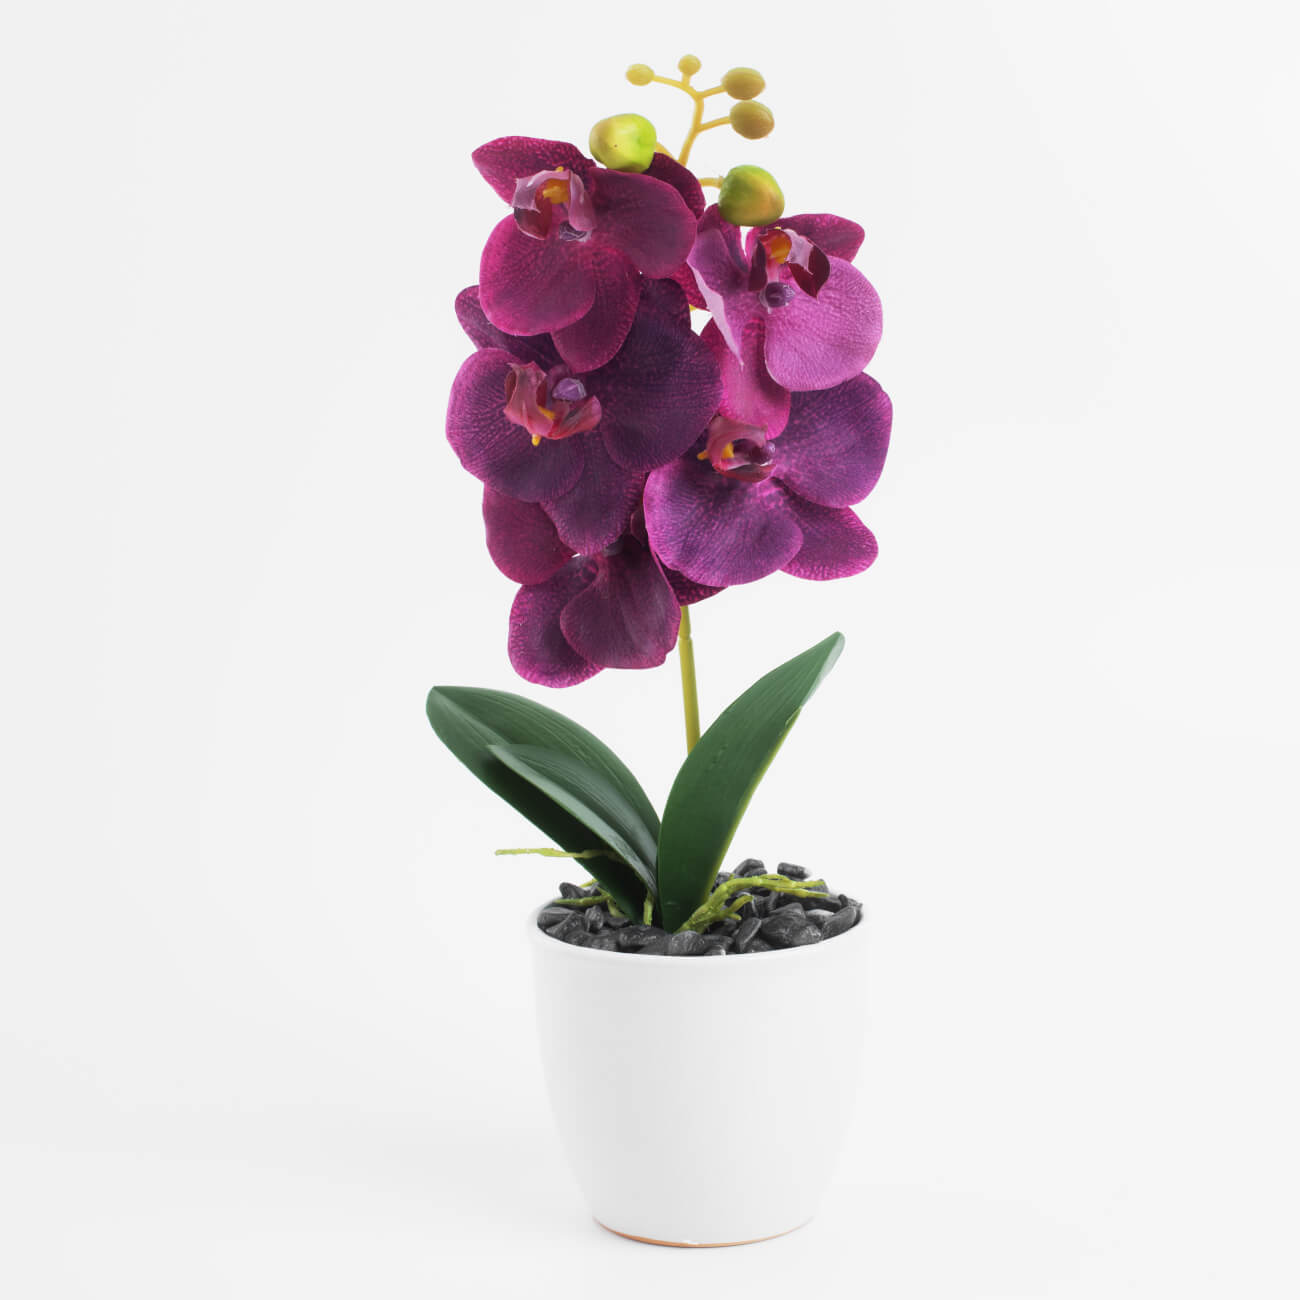 Растение искусственное, 35 см, в горшке, полиэстер/керамика, Розовая орхидея, Orchid эхинодорус фенси твист в горшке